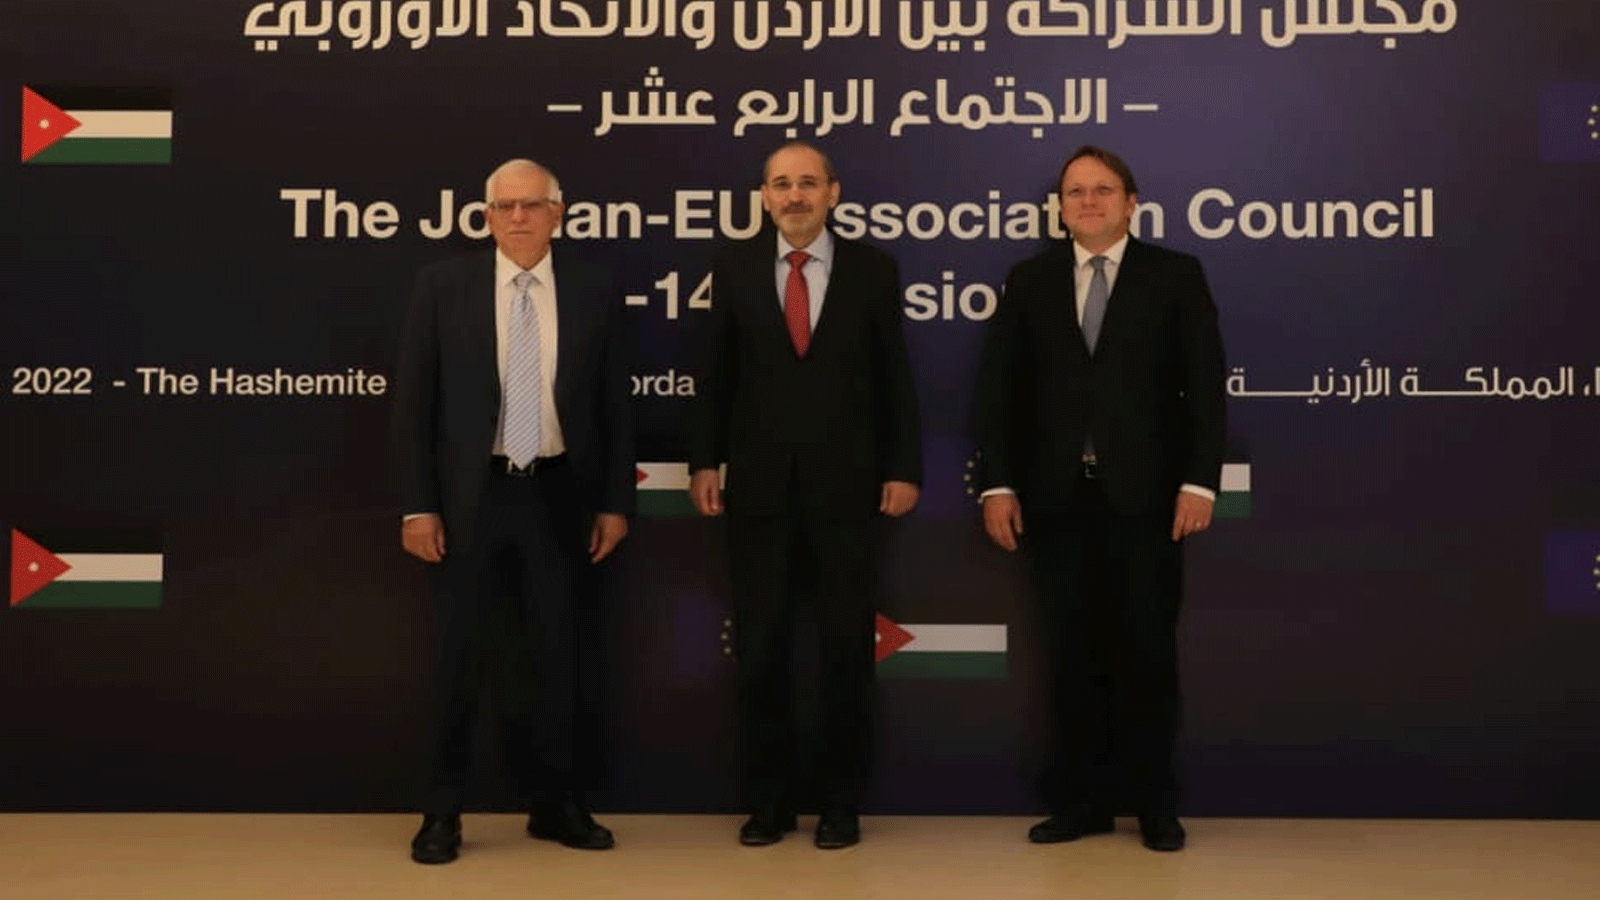 الصفدي وبوريل يترأسان الاجتماع الـ 14 لمجلس الشراكة الأردنية الأوروبية